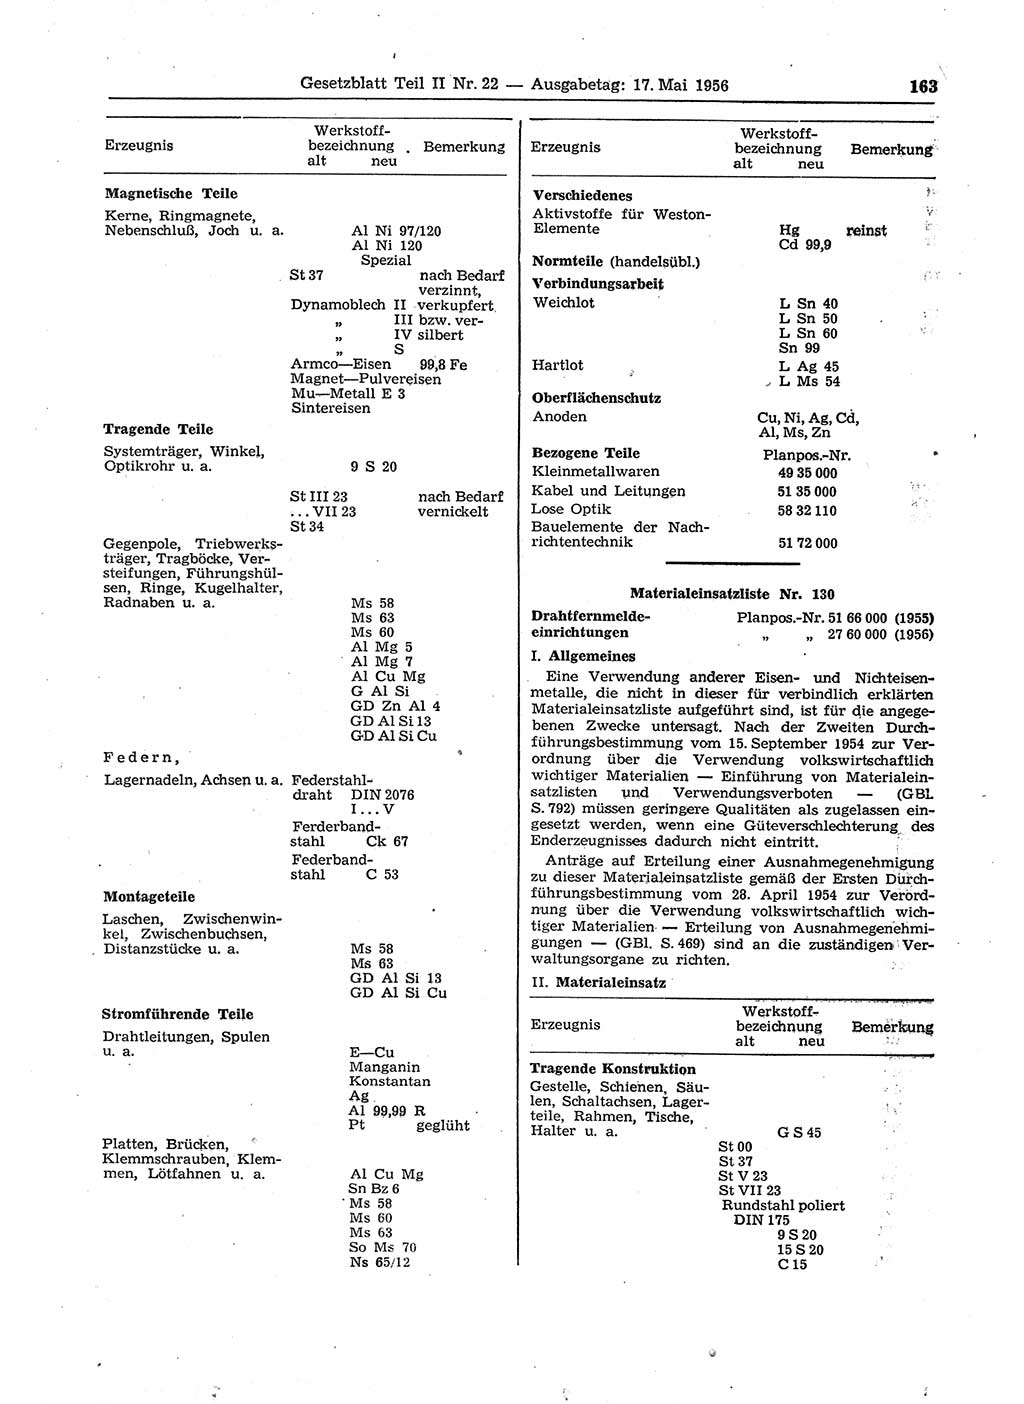 Gesetzblatt (GBl.) der Deutschen Demokratischen Republik (DDR) Teil ⅠⅠ 1956, Seite 163 (GBl. DDR ⅠⅠ 1956, S. 163)